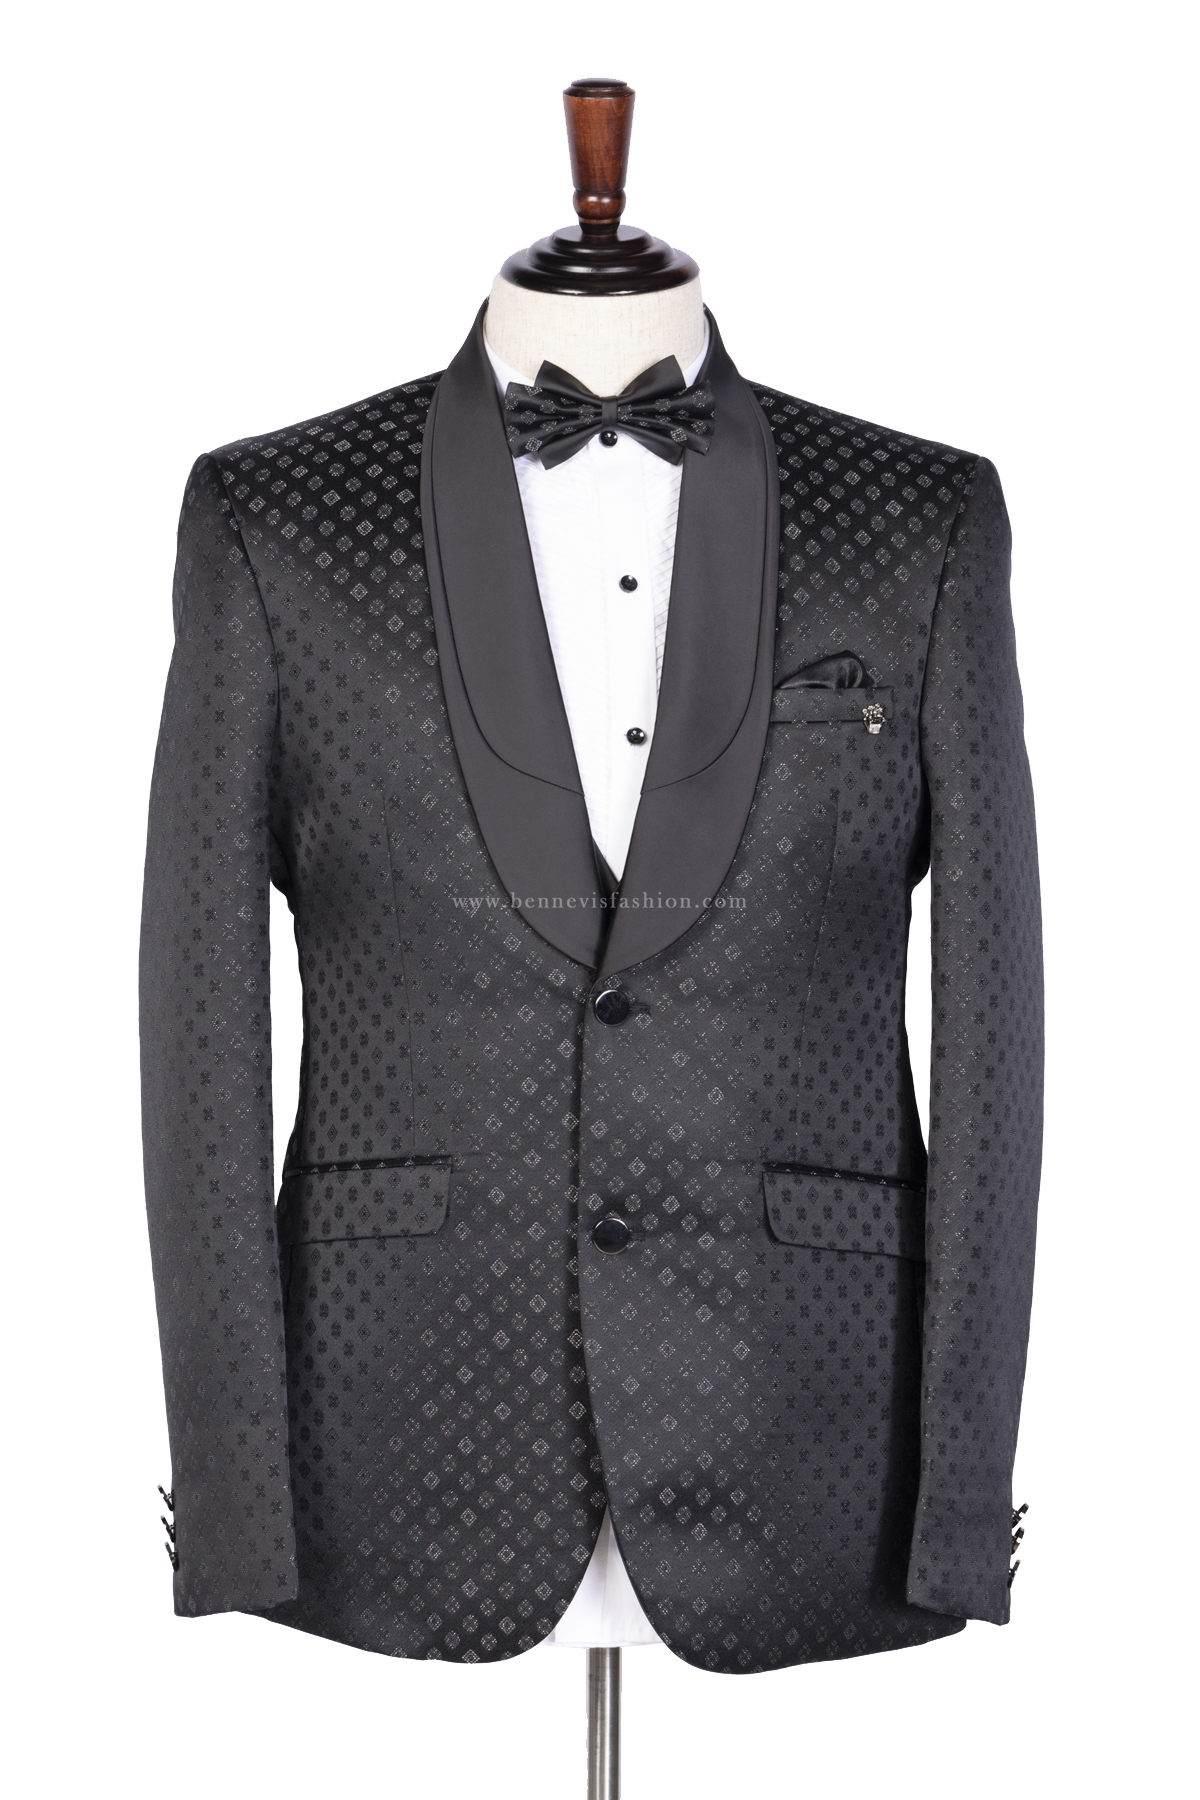 Coal Black Tuxedo Suit for Men | Bennevis Fashion